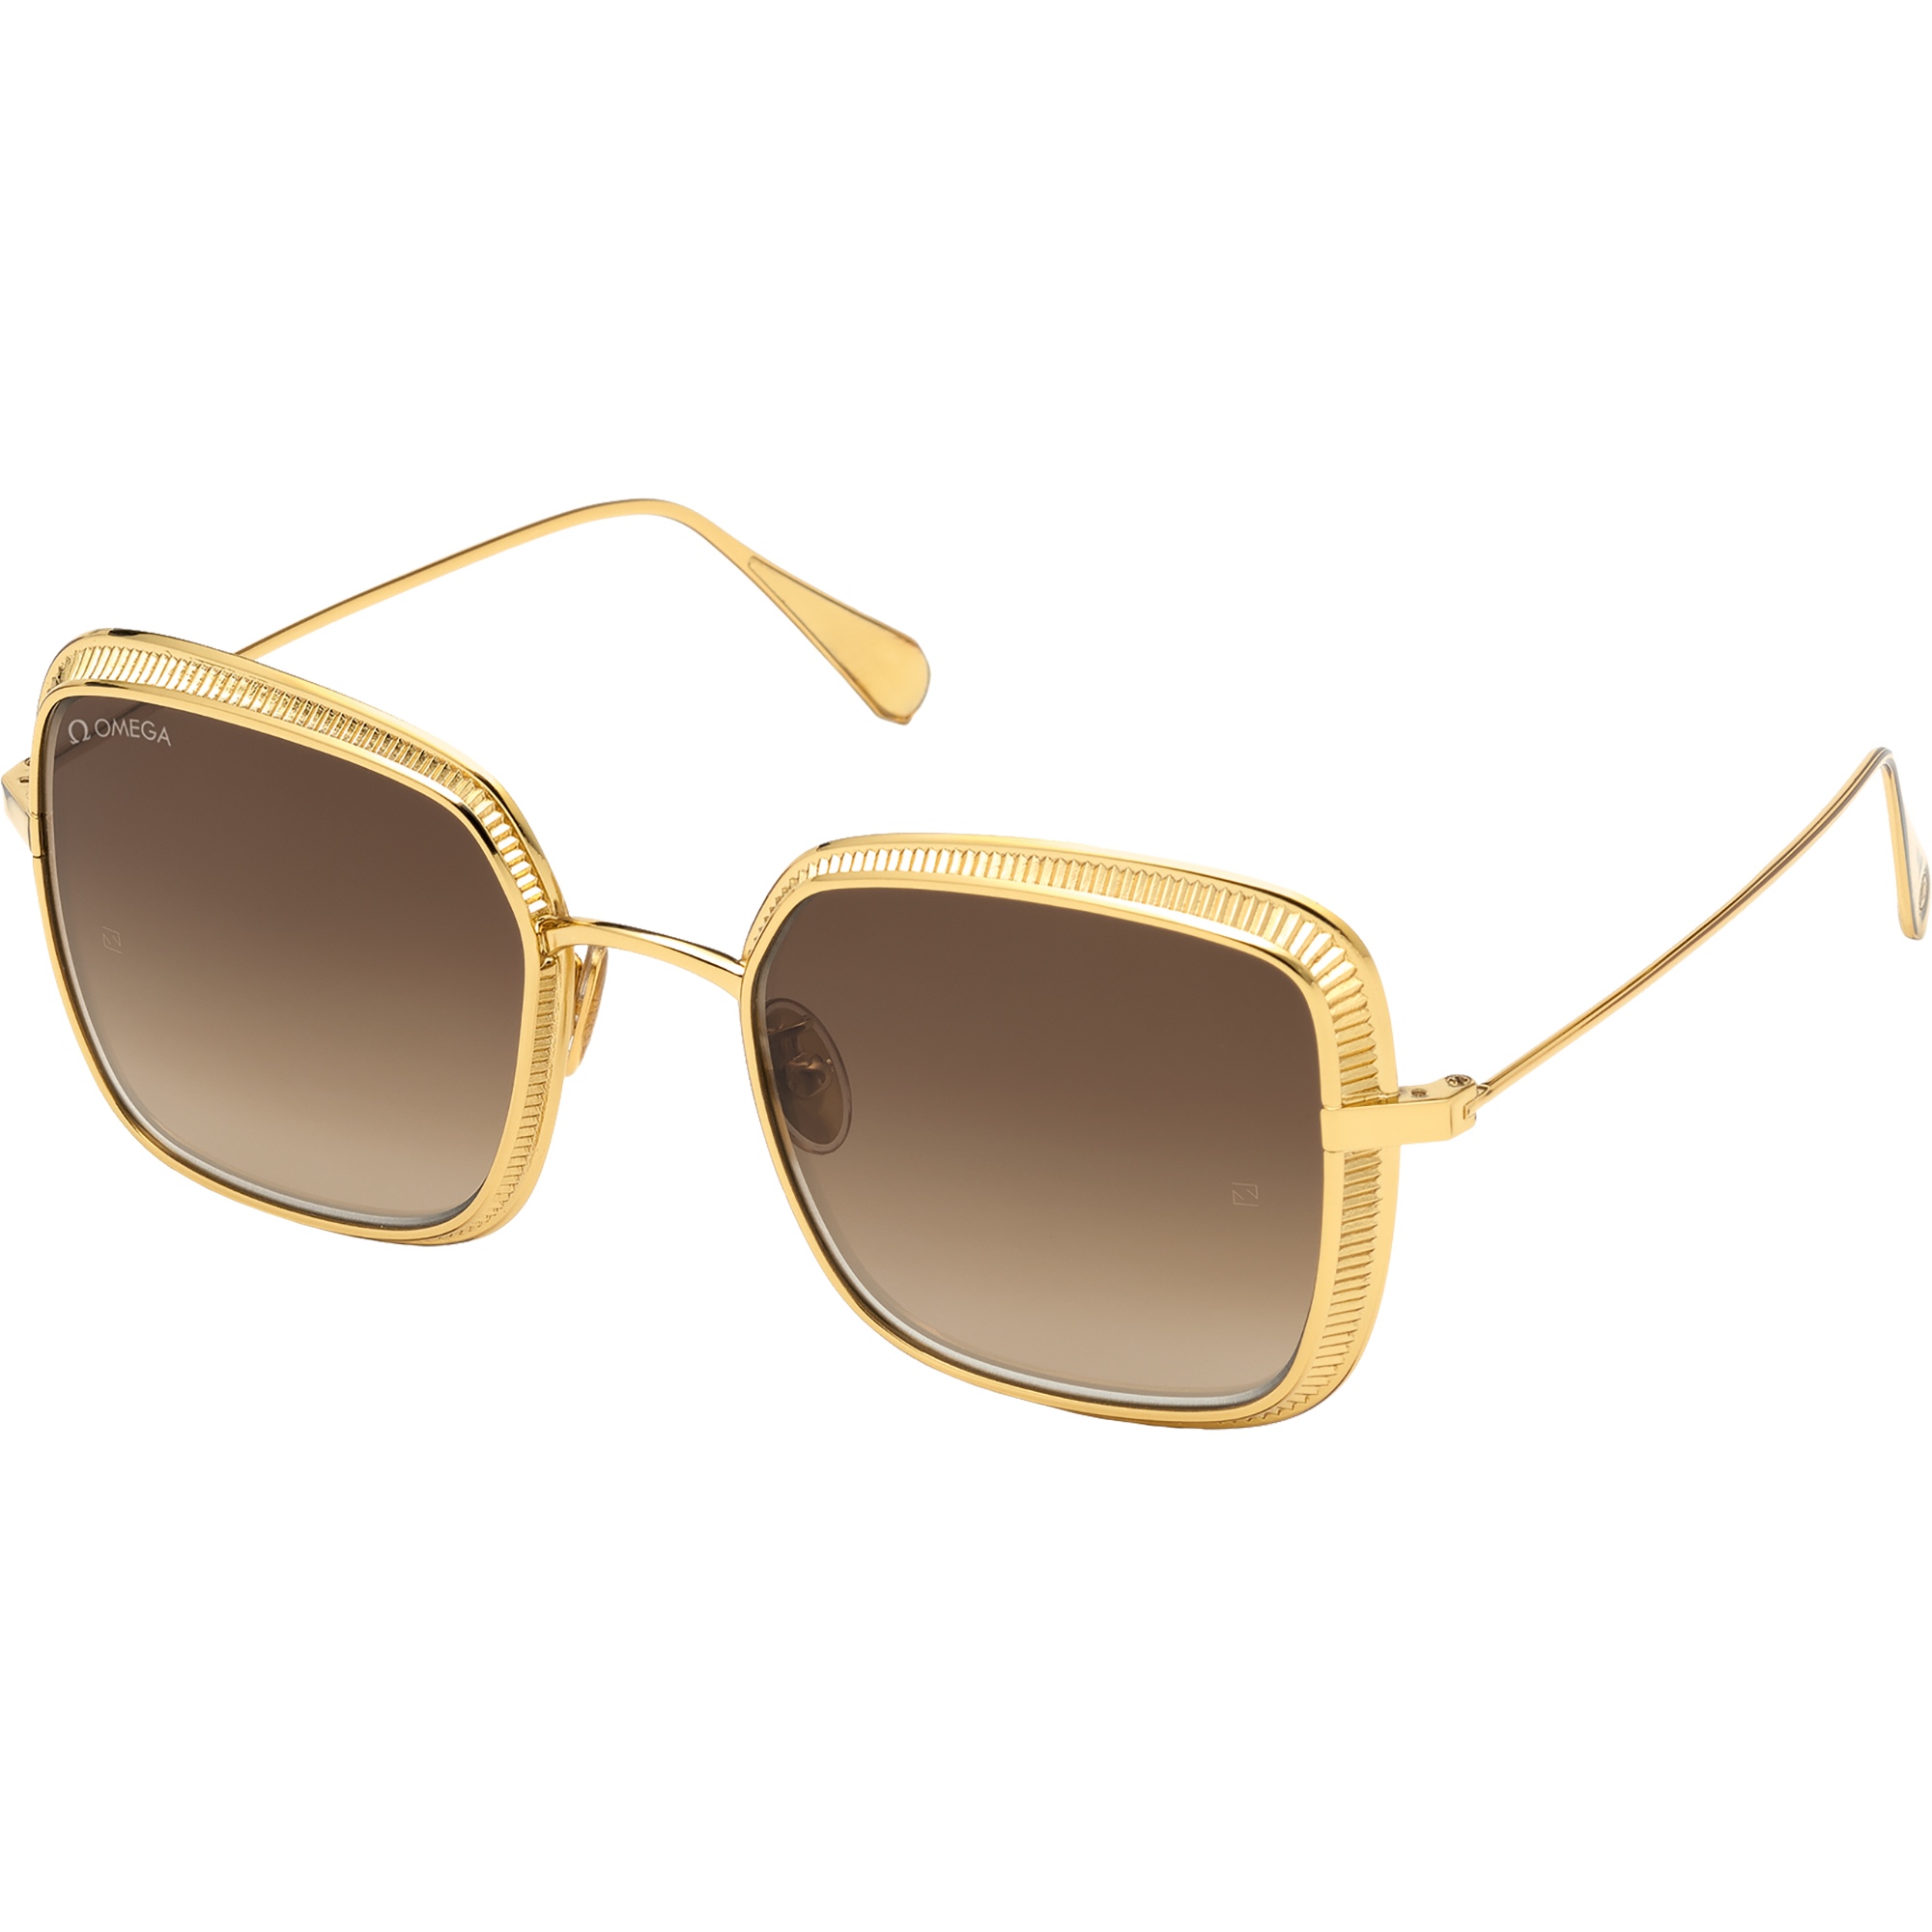 Солнцезащитные очки - Квадратная форма, Женские очки - OM0017-H5430G